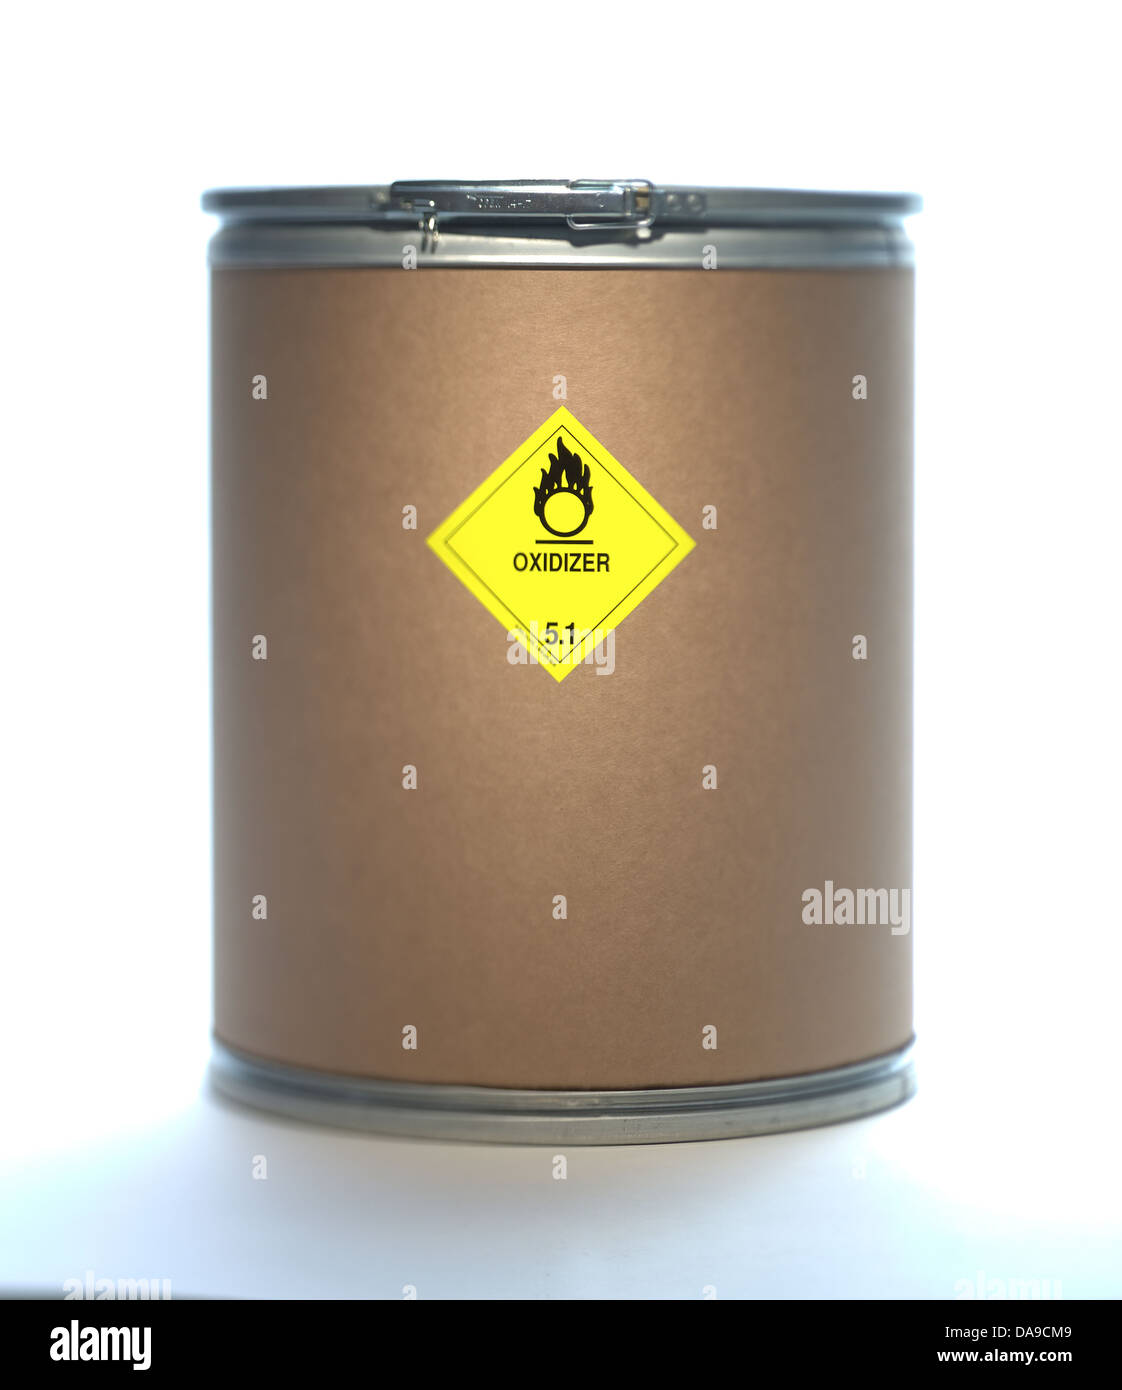 Oxidizer barrel Stock Photo